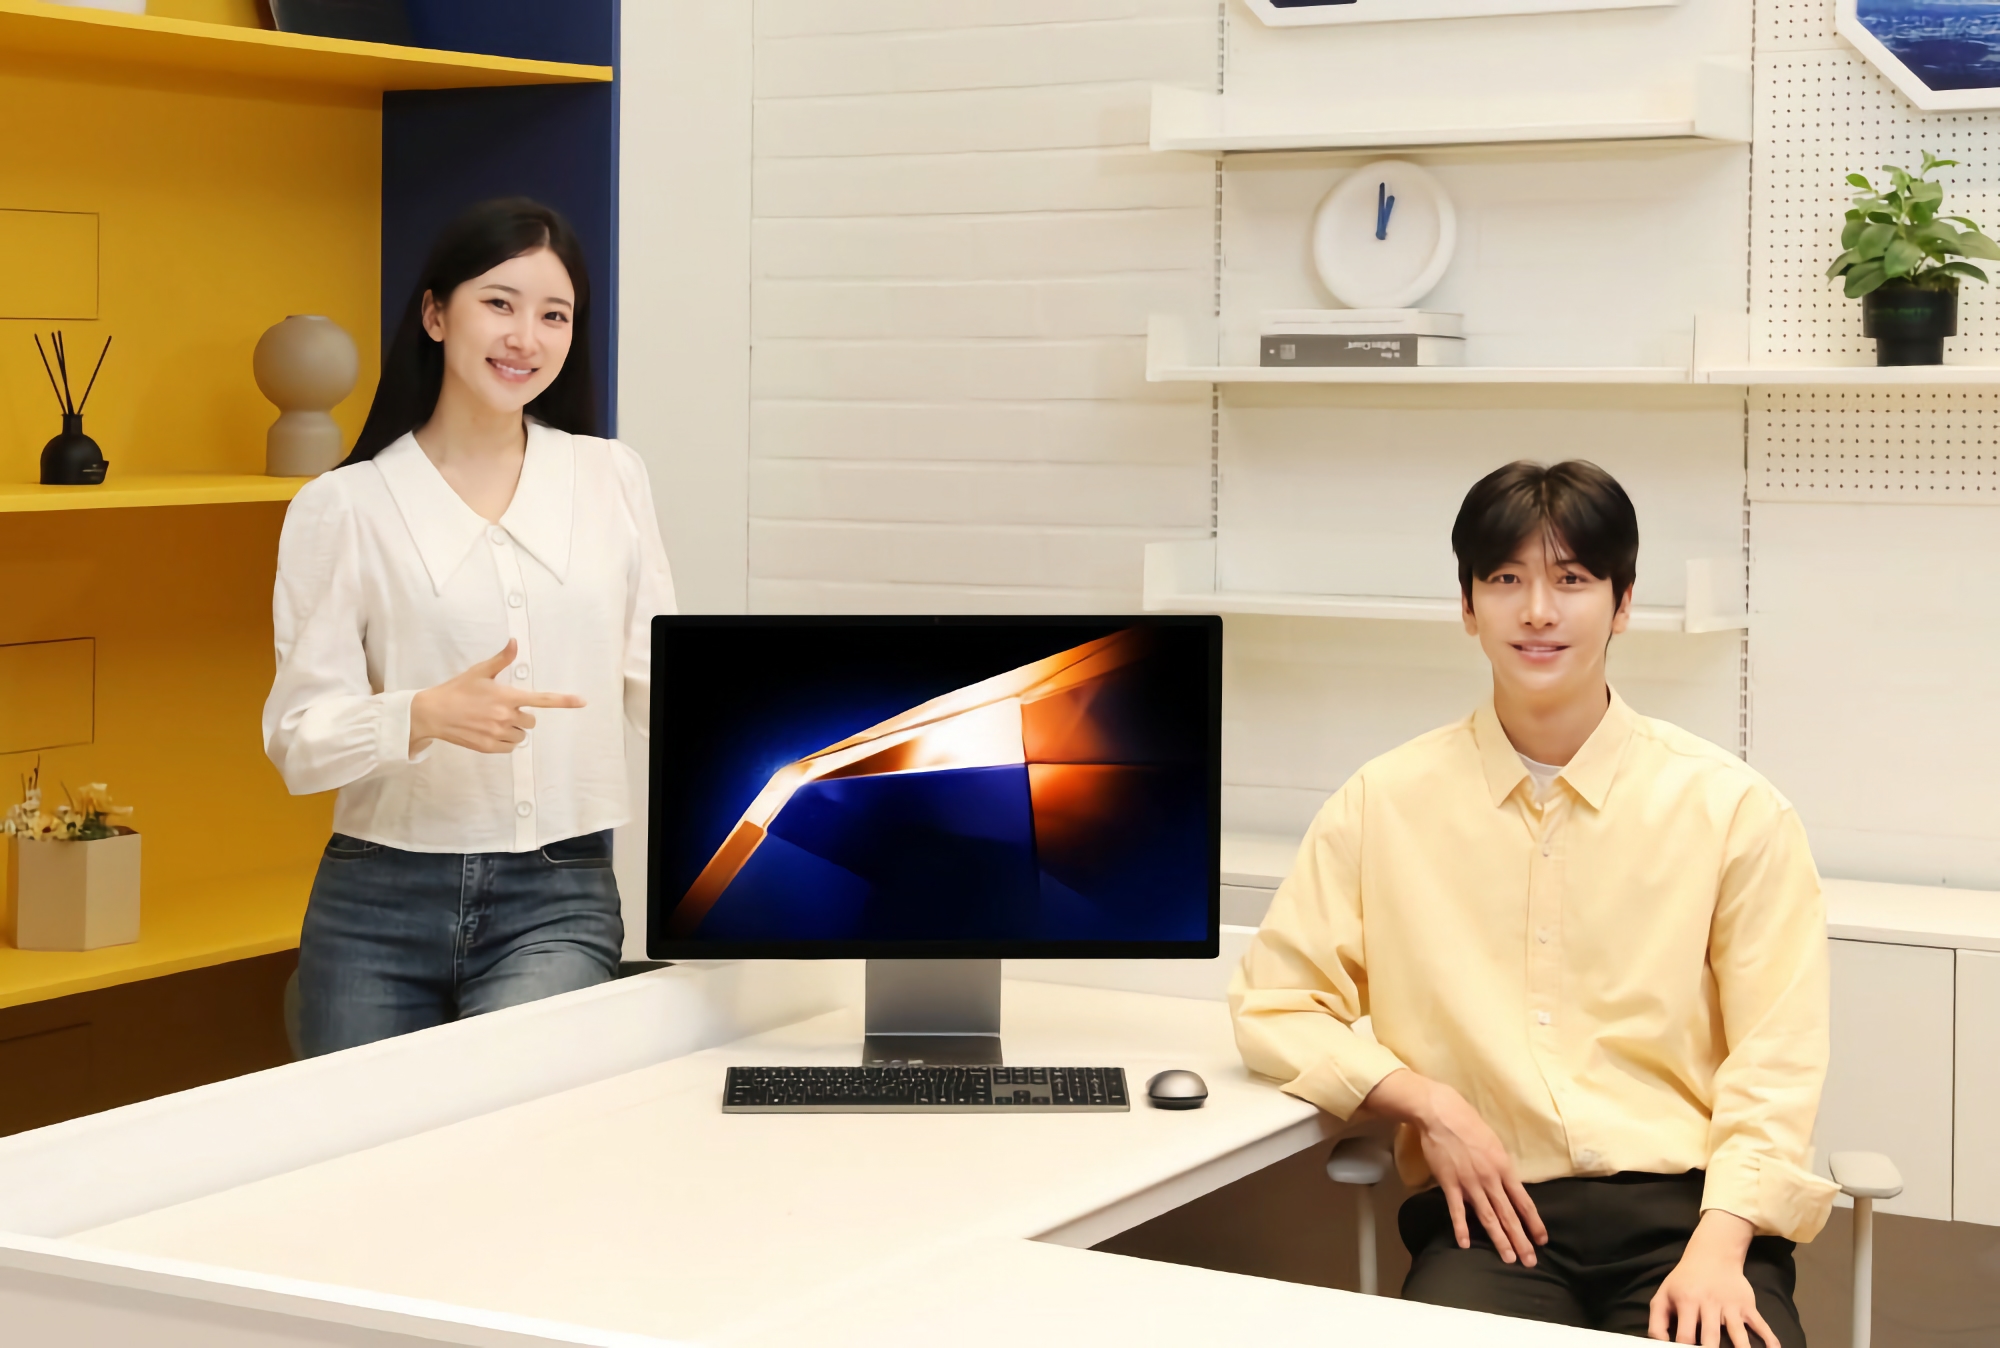 iMac-konkurrent: Samsung presenterar All-In-One Pro monoblock med 4K-skärm och Intel Core Ultra-chip